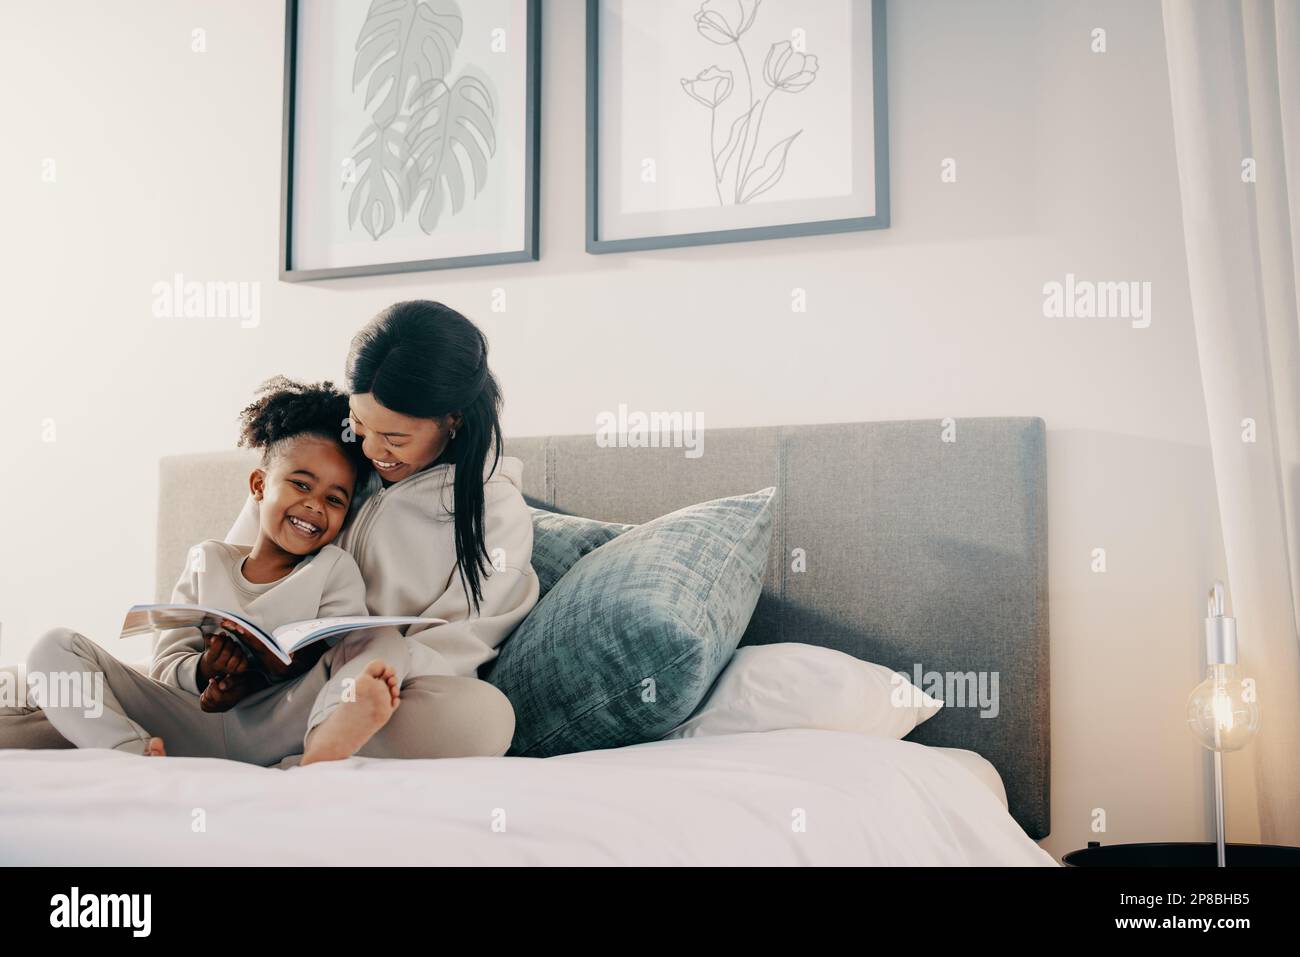 Mutter und Tochter lesen gemeinsam ein Buch, sie lächeln und sitzen auf einem Bett. Glückliche mutter hilft ihrem Kind mit ihren Lesekompetenzen. Stockfoto